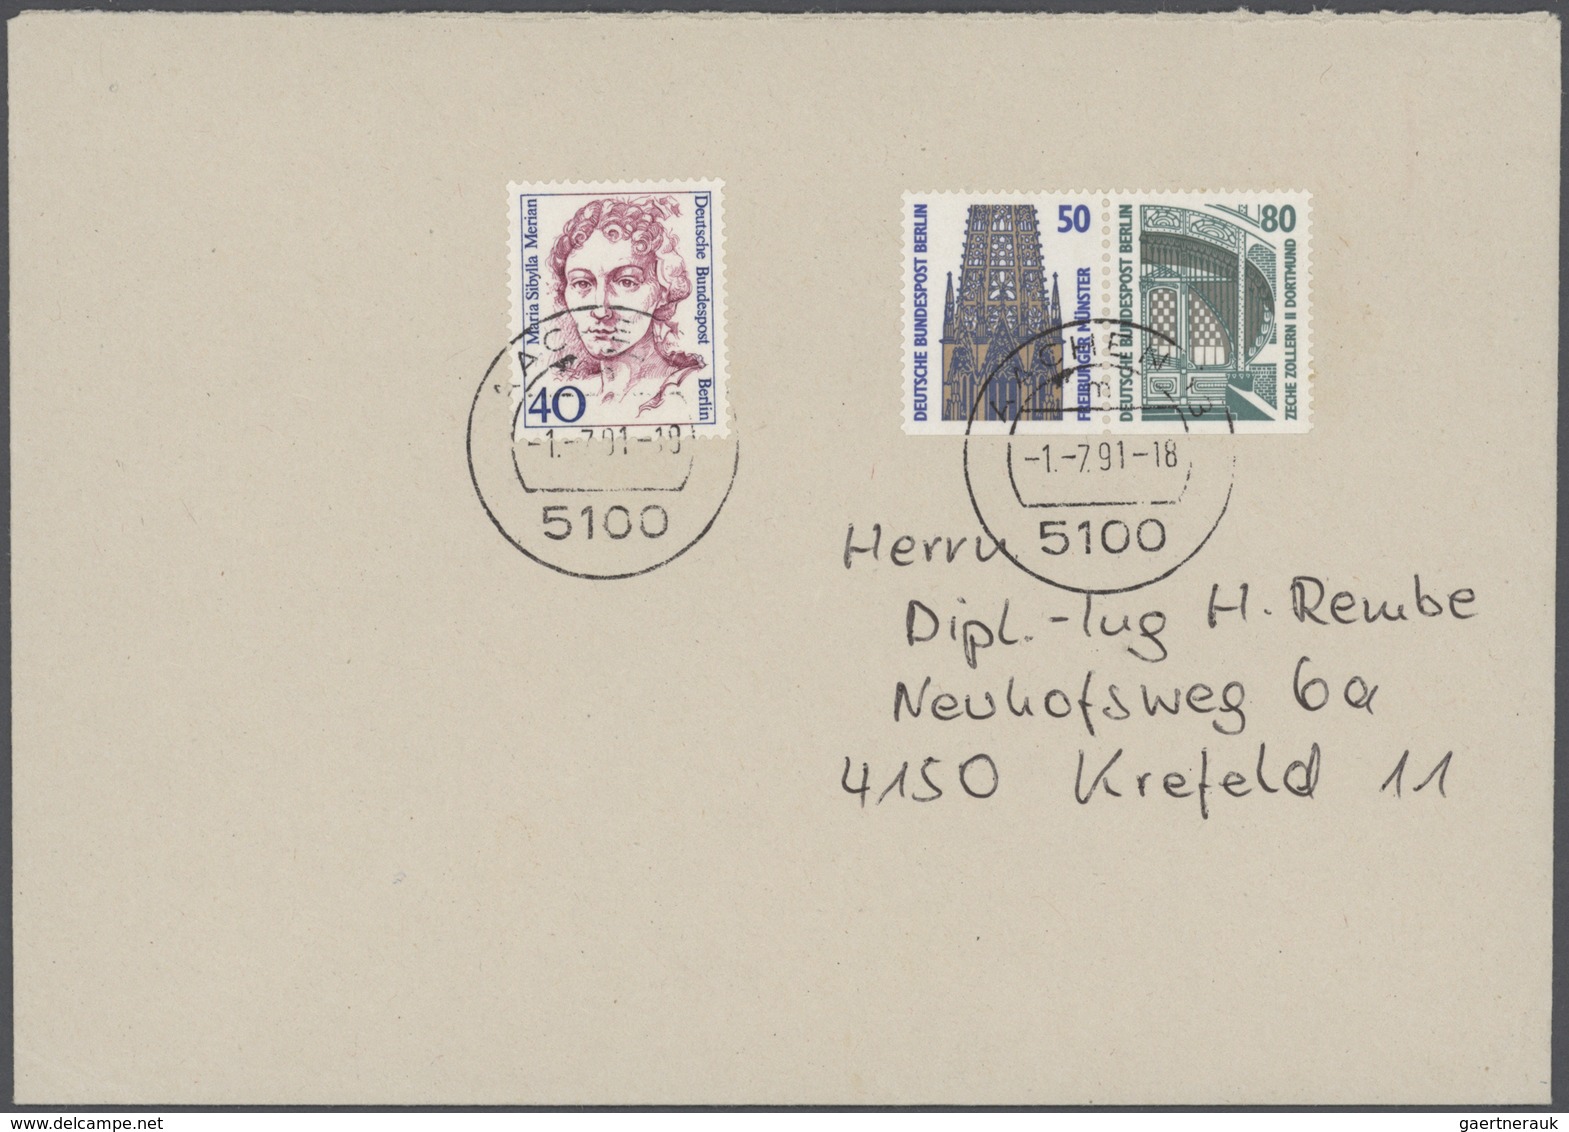 Berlin: 1958/1990, vielseitiger Sammlungsbestand von über 740 Briefen und Karten, dabei eine Vielzah